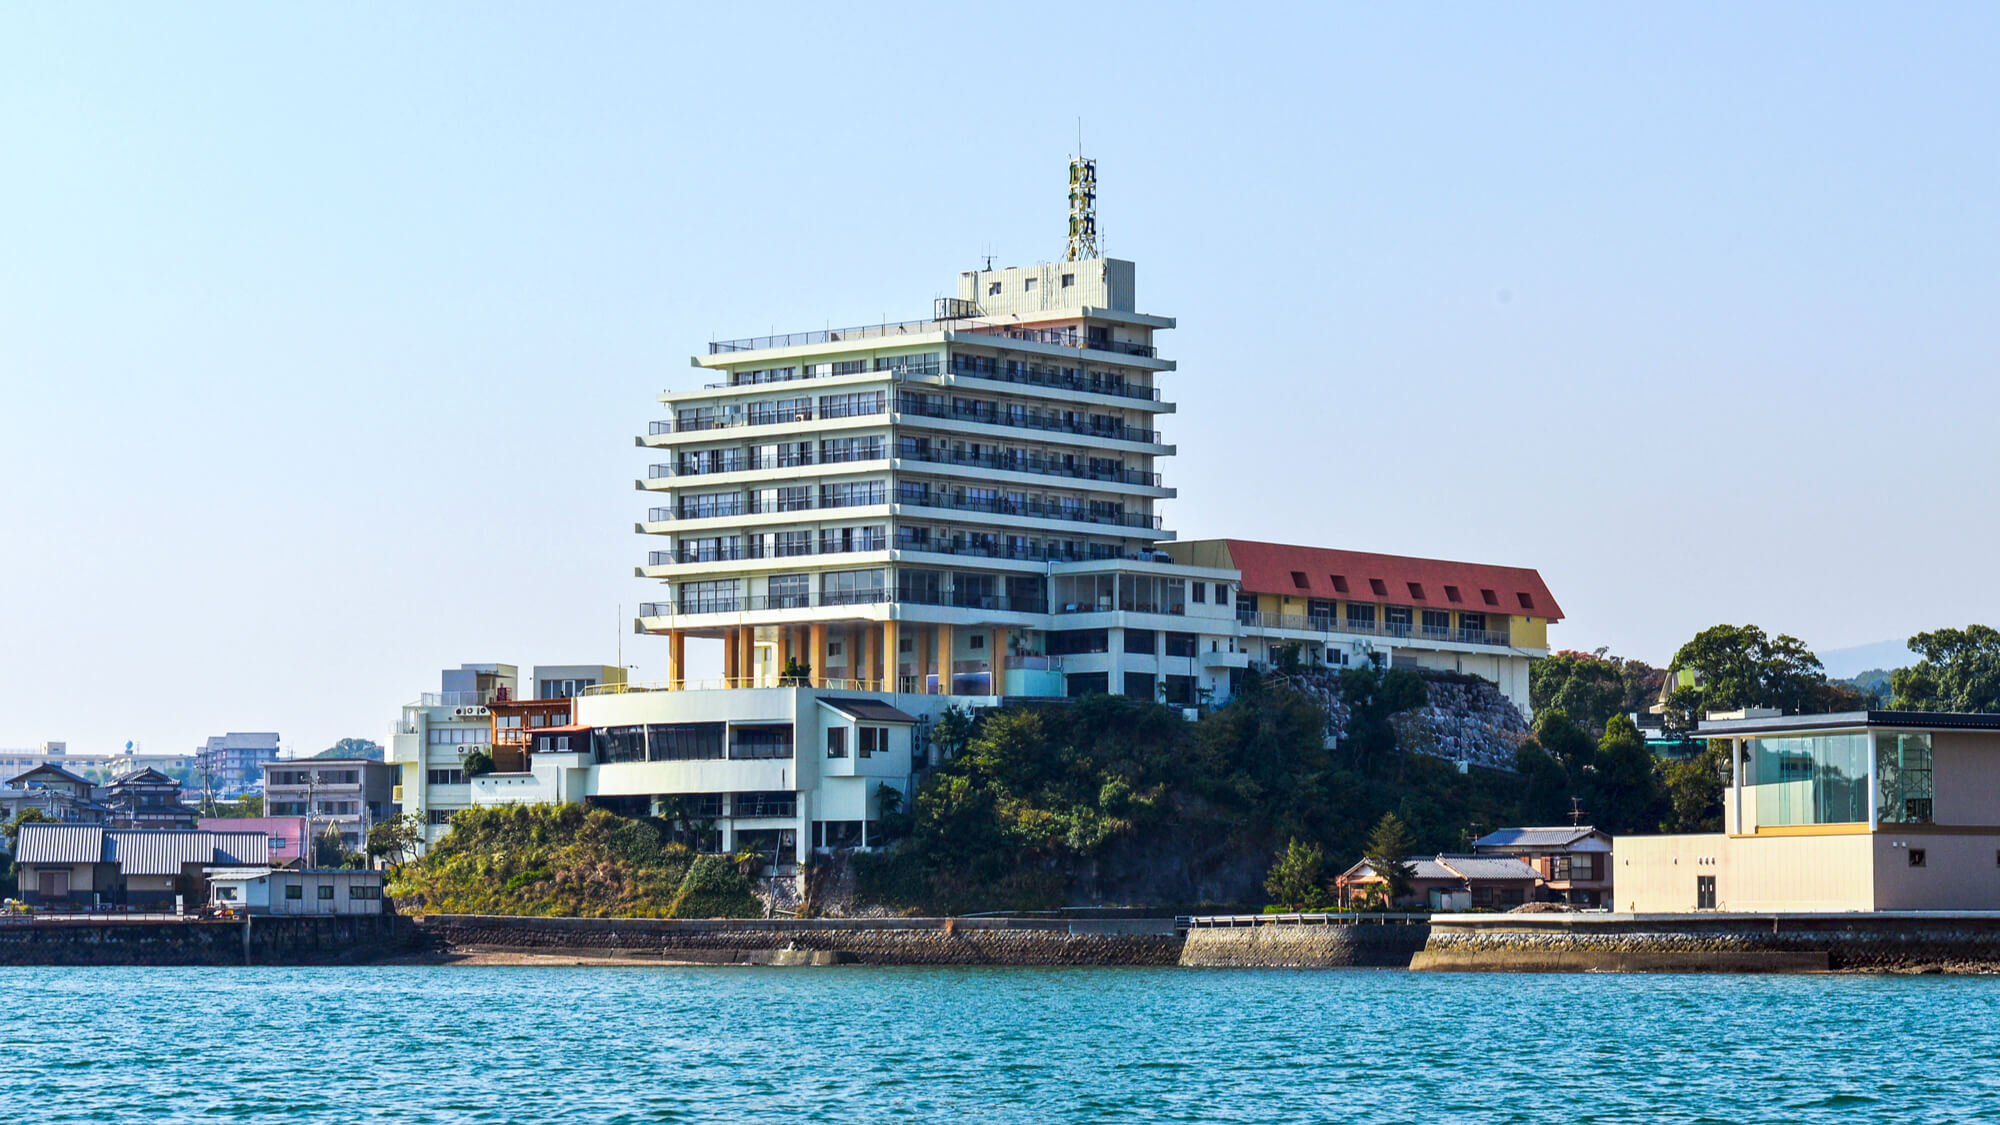 Toyo Tsukumo Bay Hotel